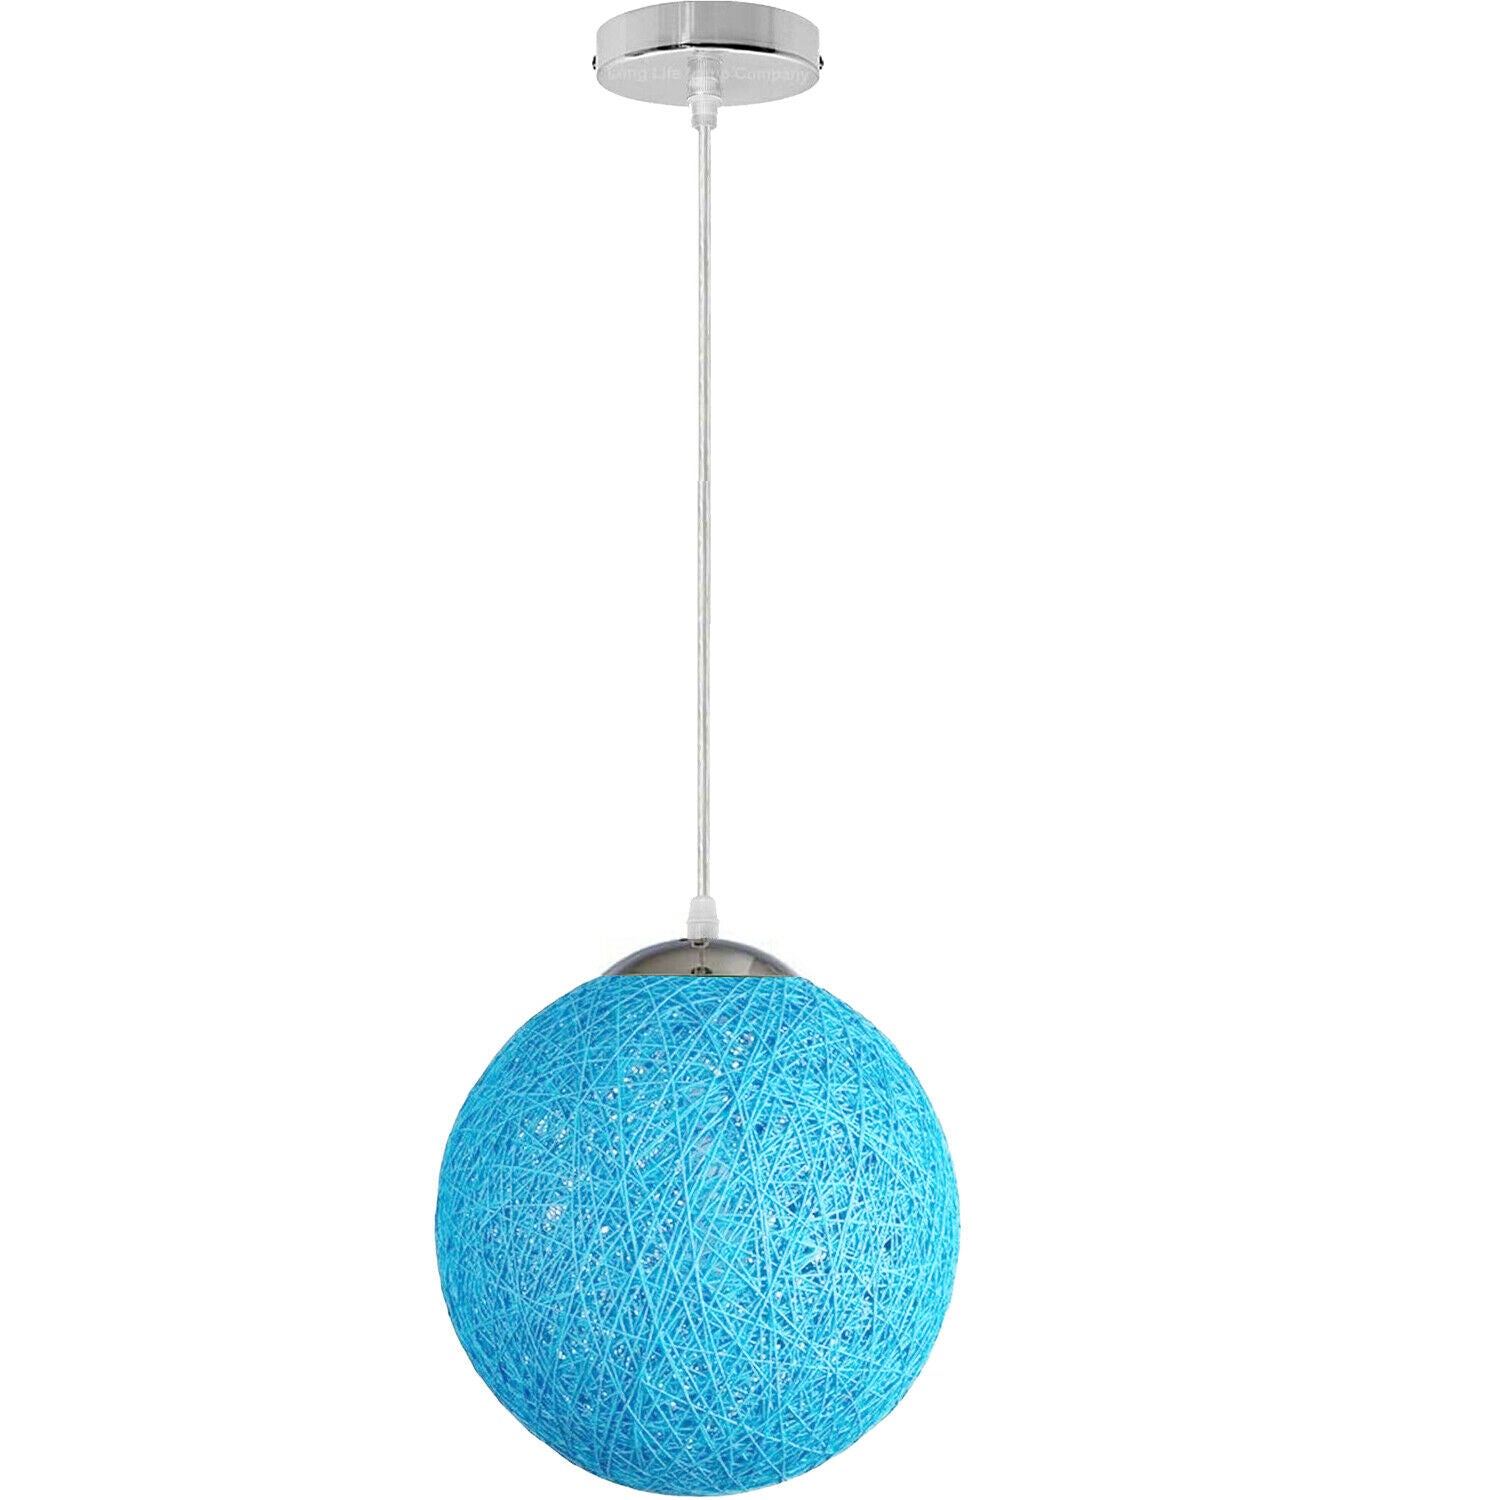 Blue Celling Pendant Light Shade Kitchen Bar Chandelier Hanging Lamp Ceiling Lights~1807 - LEDSone UK Ltd